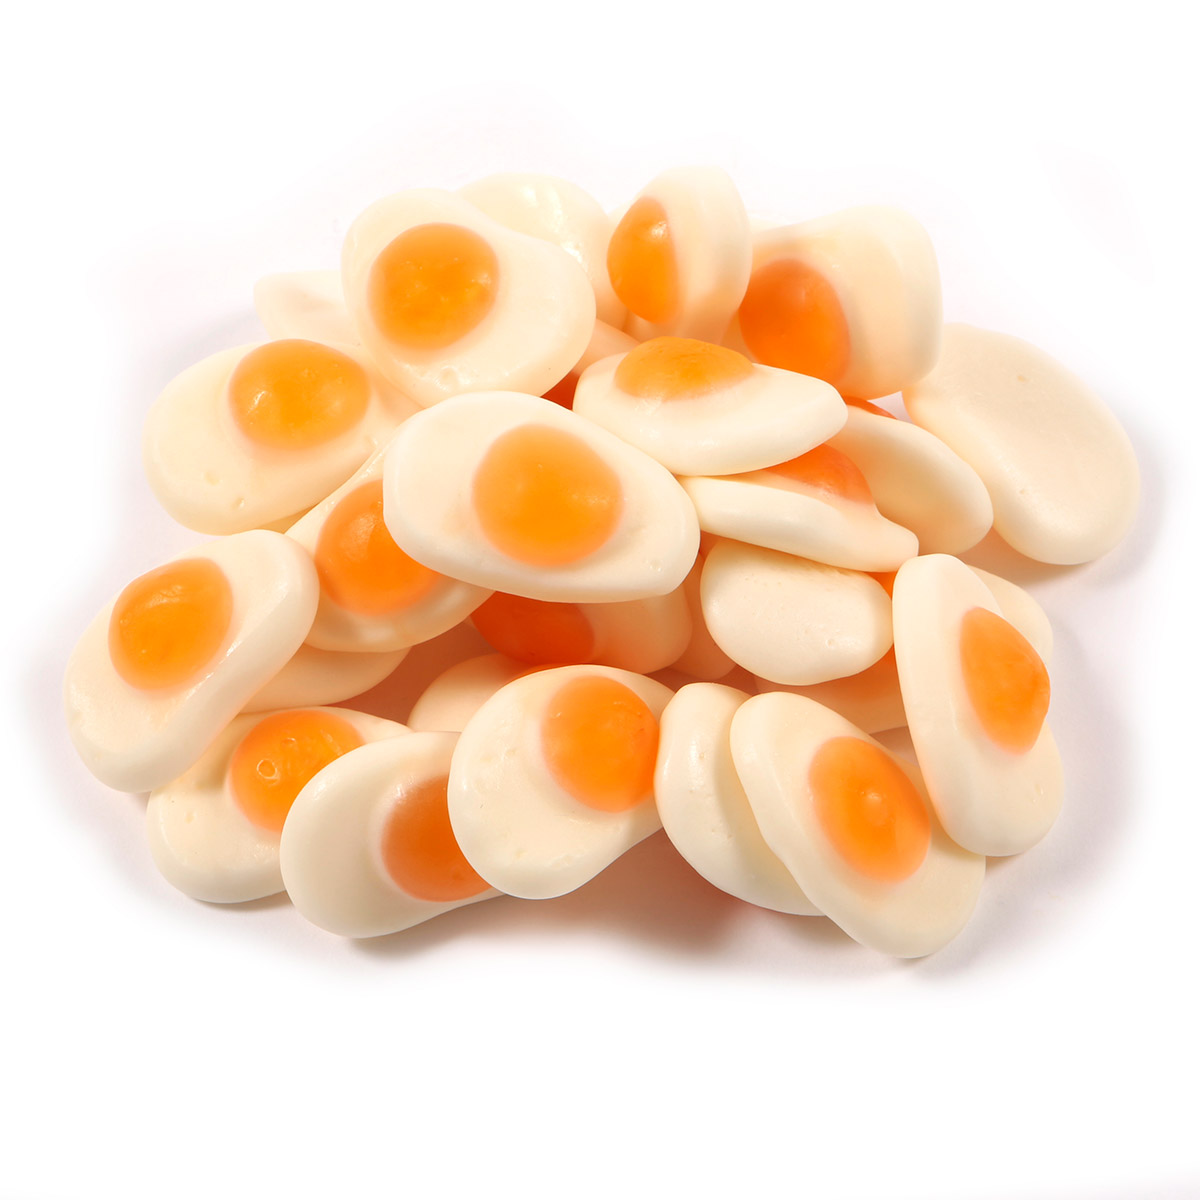 Dorri - Fried Eggs